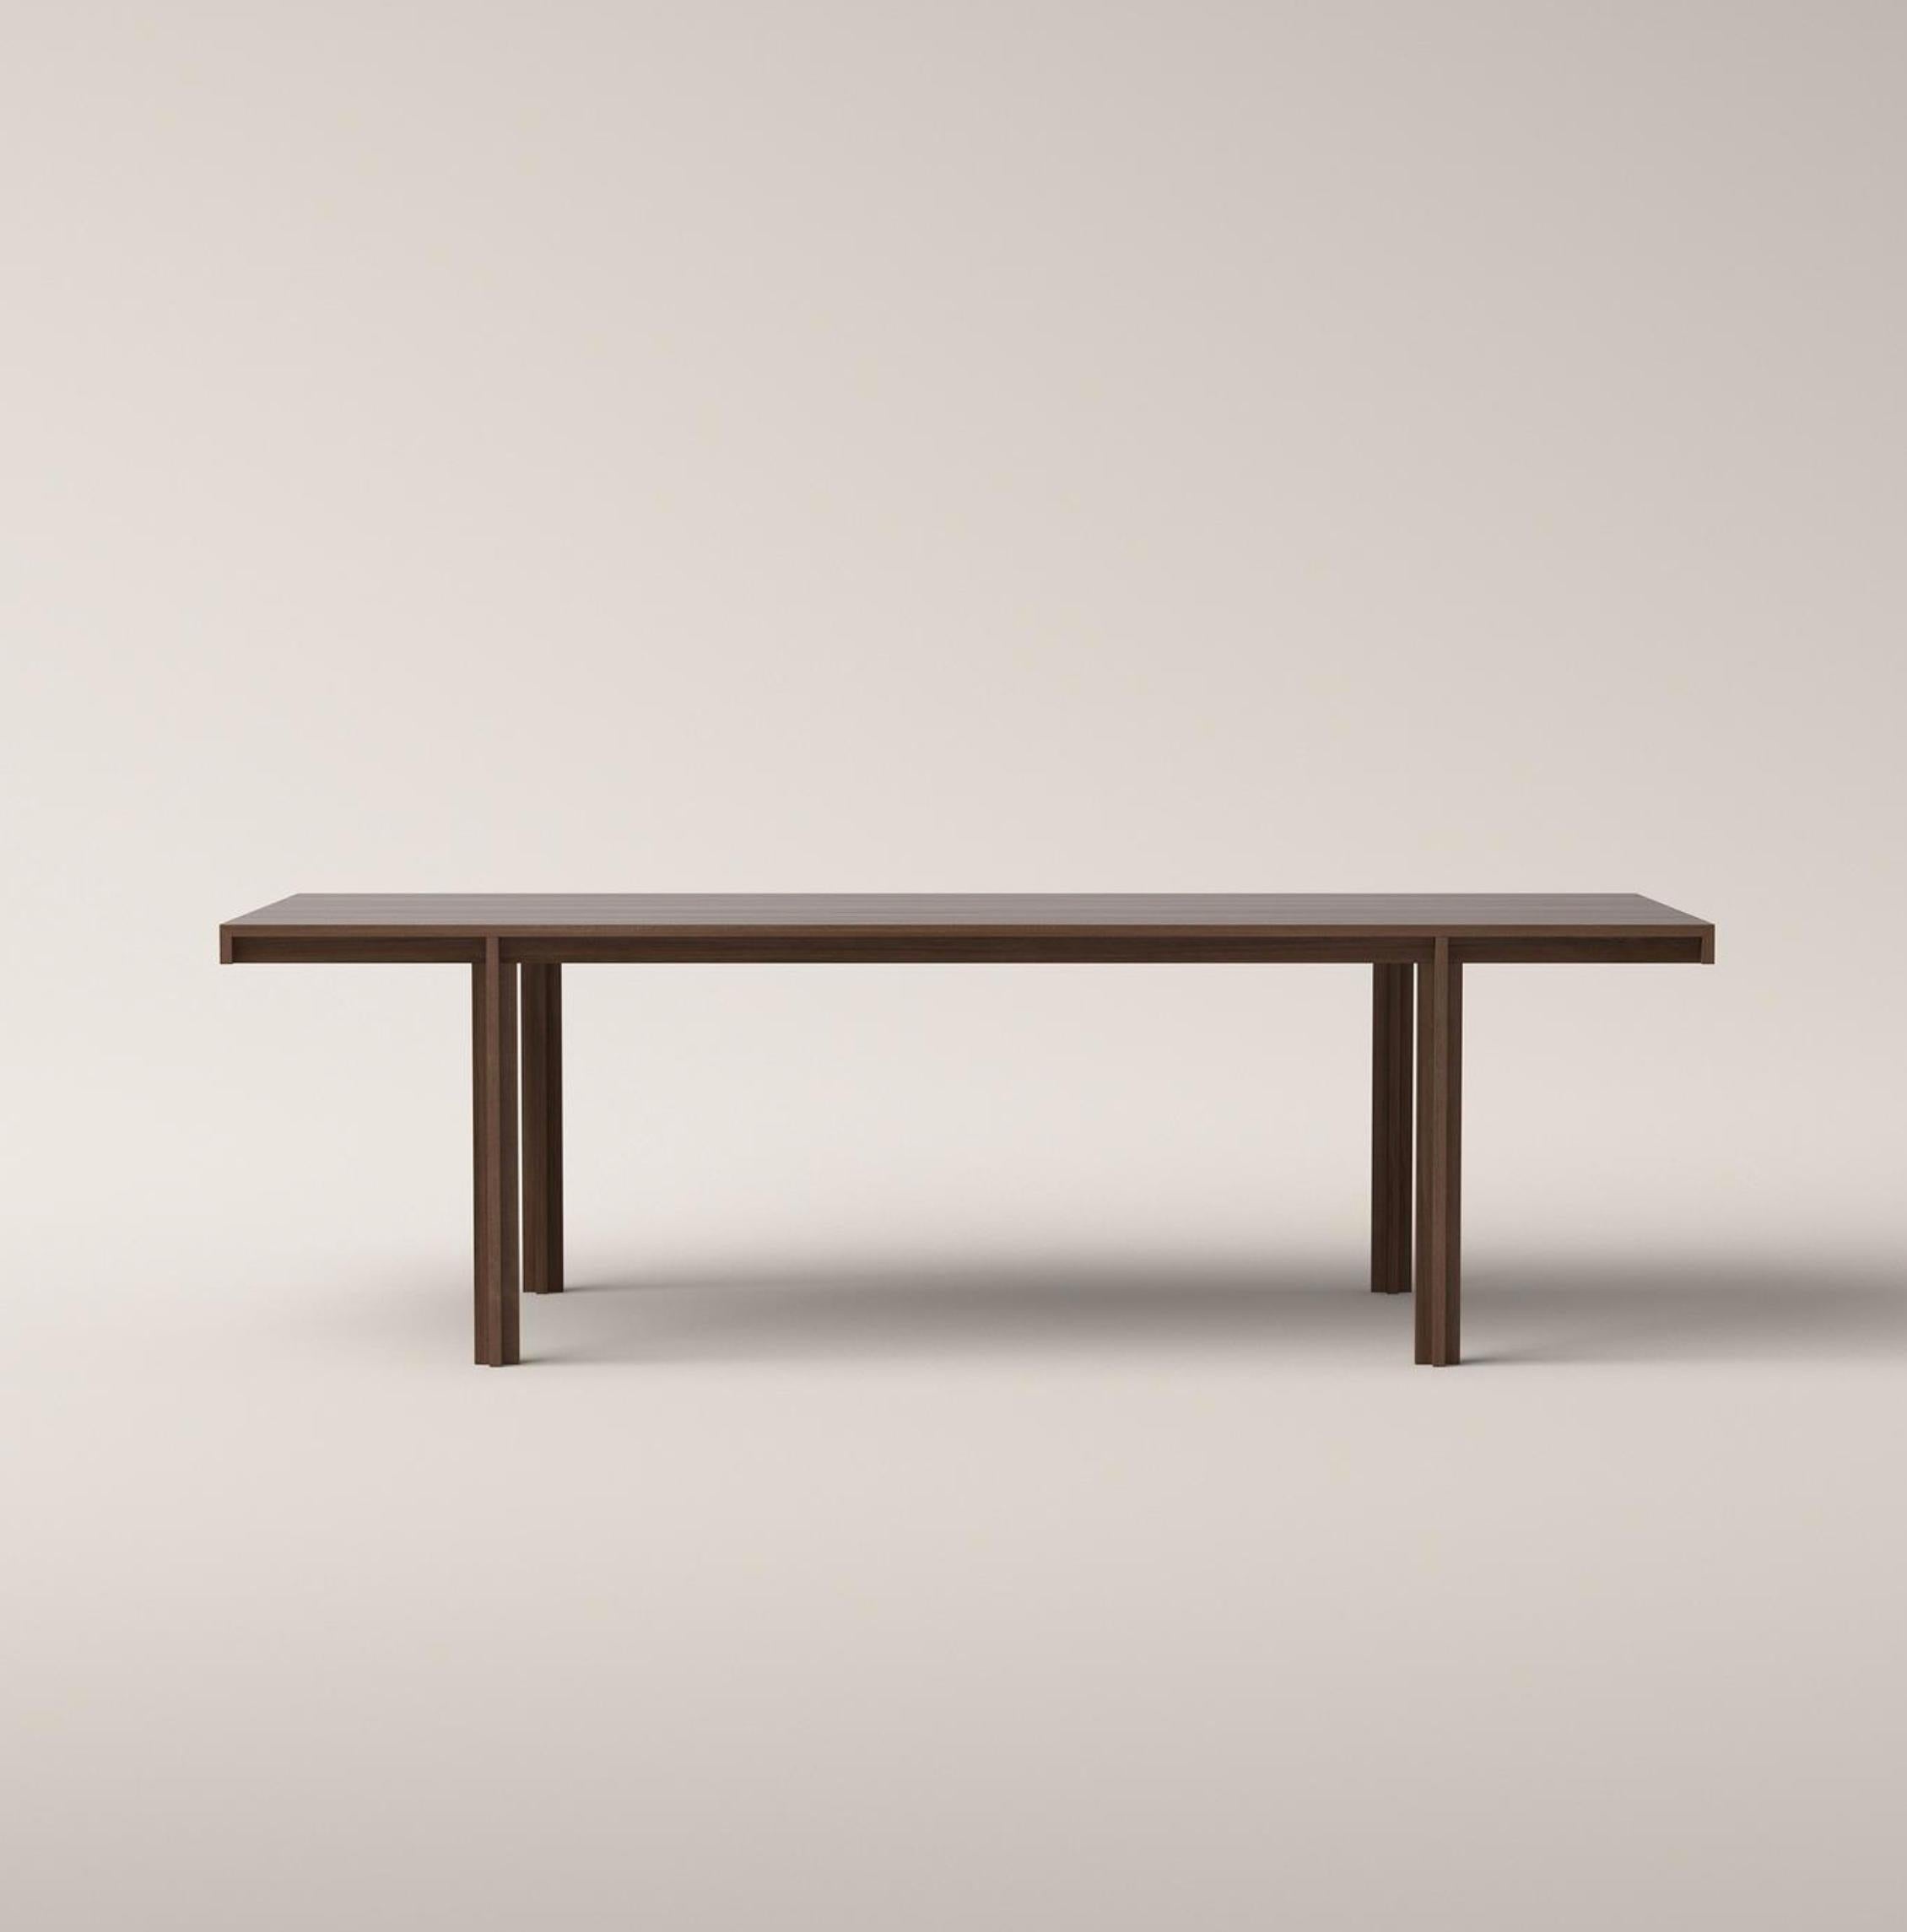 Table conçue par Bodil Kjær en 1961. Disponible en chêne naturel, chêne fumé, chêne blanc ou noyer. Le prix indiqué s'applique à la table en chêne, la table en noyer est disponible pour 9.650€.